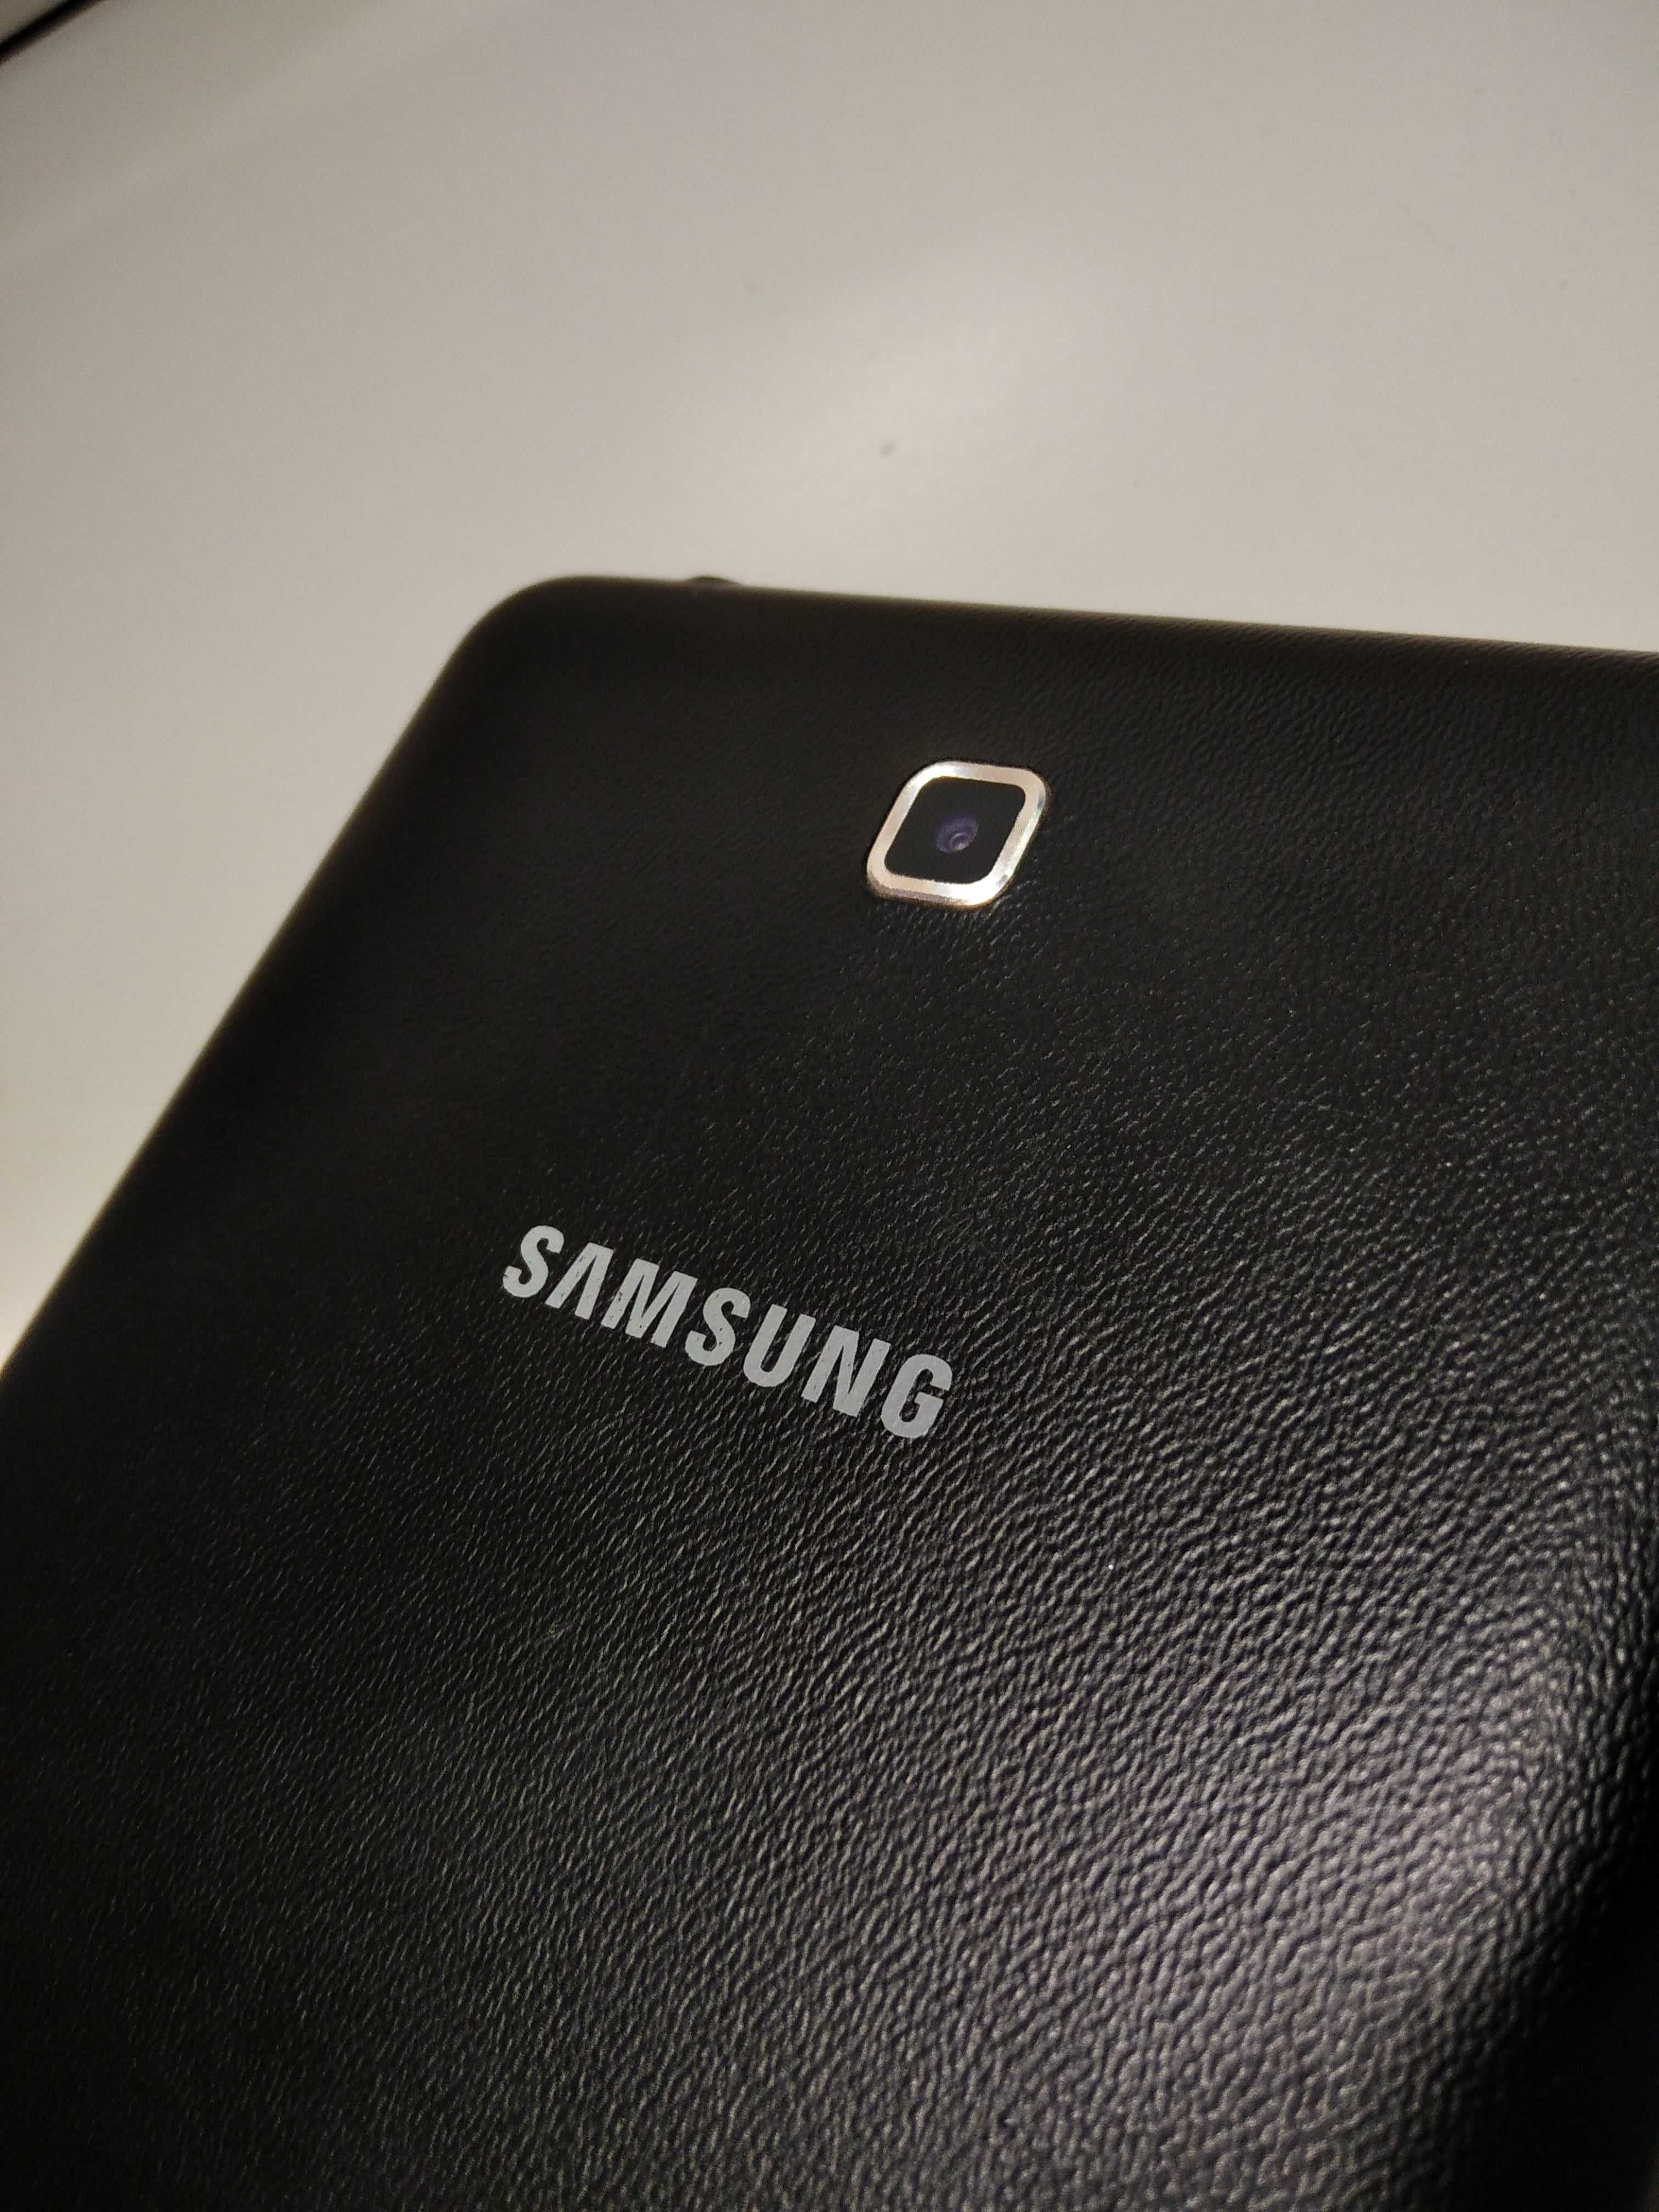 Samsung Galaxy Tab 4. Состояние!